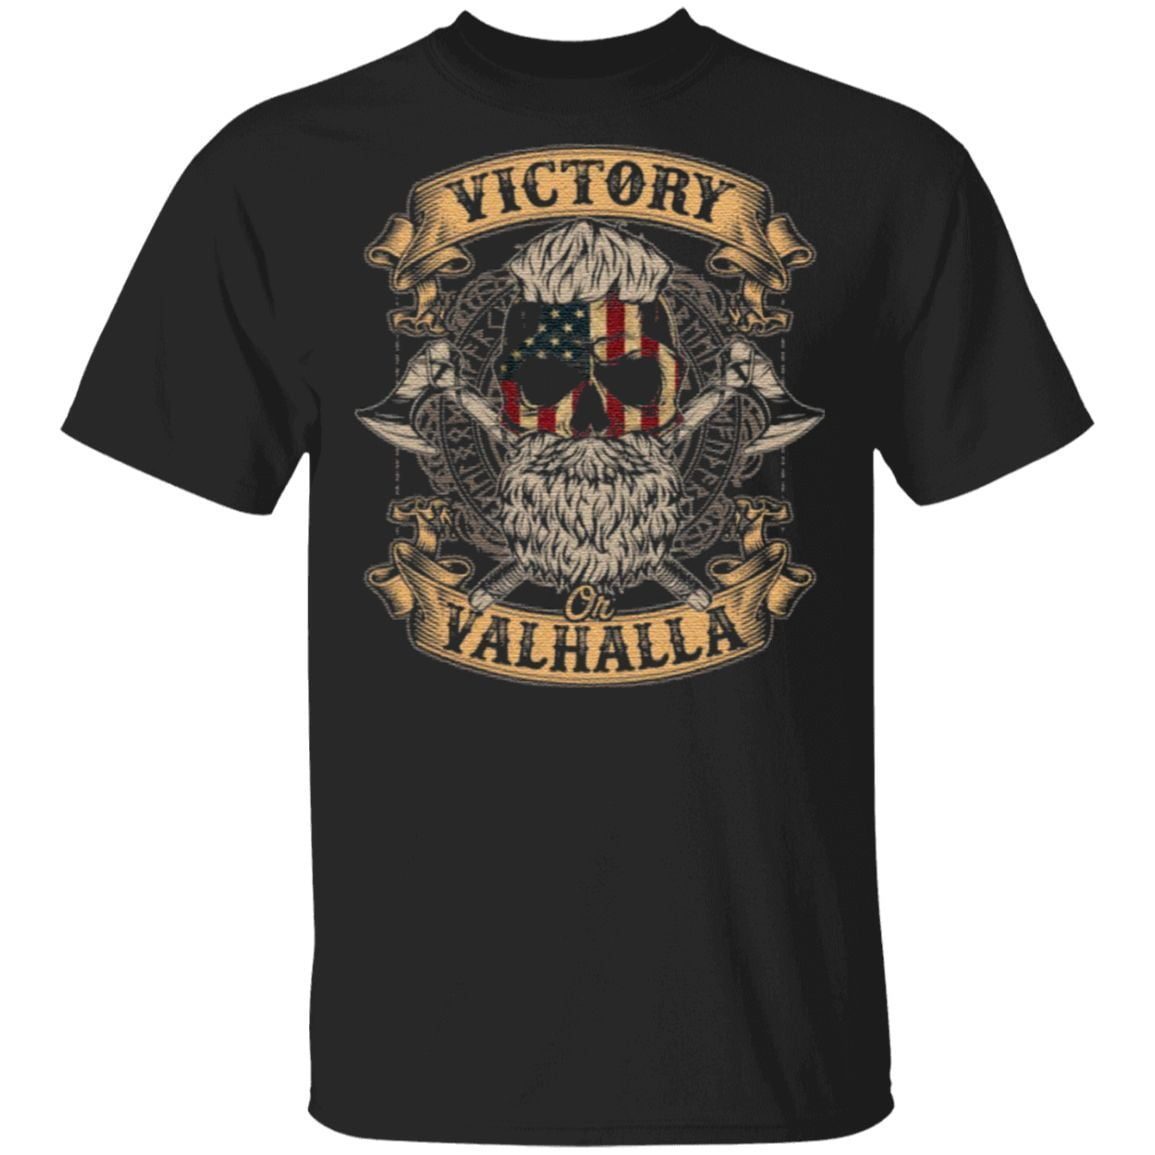 Victory Or Valhalla Shirt – Skull American Flag TShirt